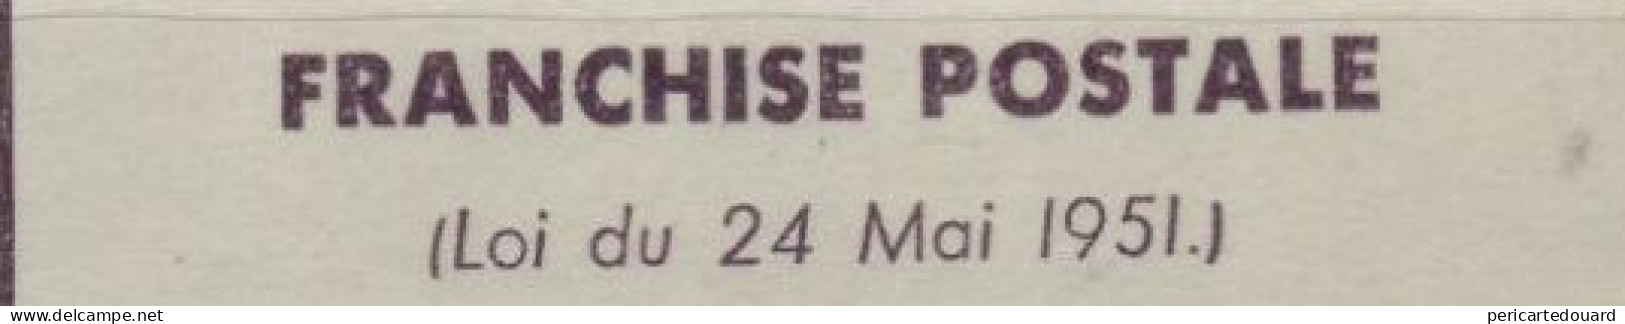 "Bon Pour Un Paquet En Franchise Postale" 14B. 4ème Régiment De Hussards, Chevrières Le 19 Novembre 1956 - Military Postage Stamps